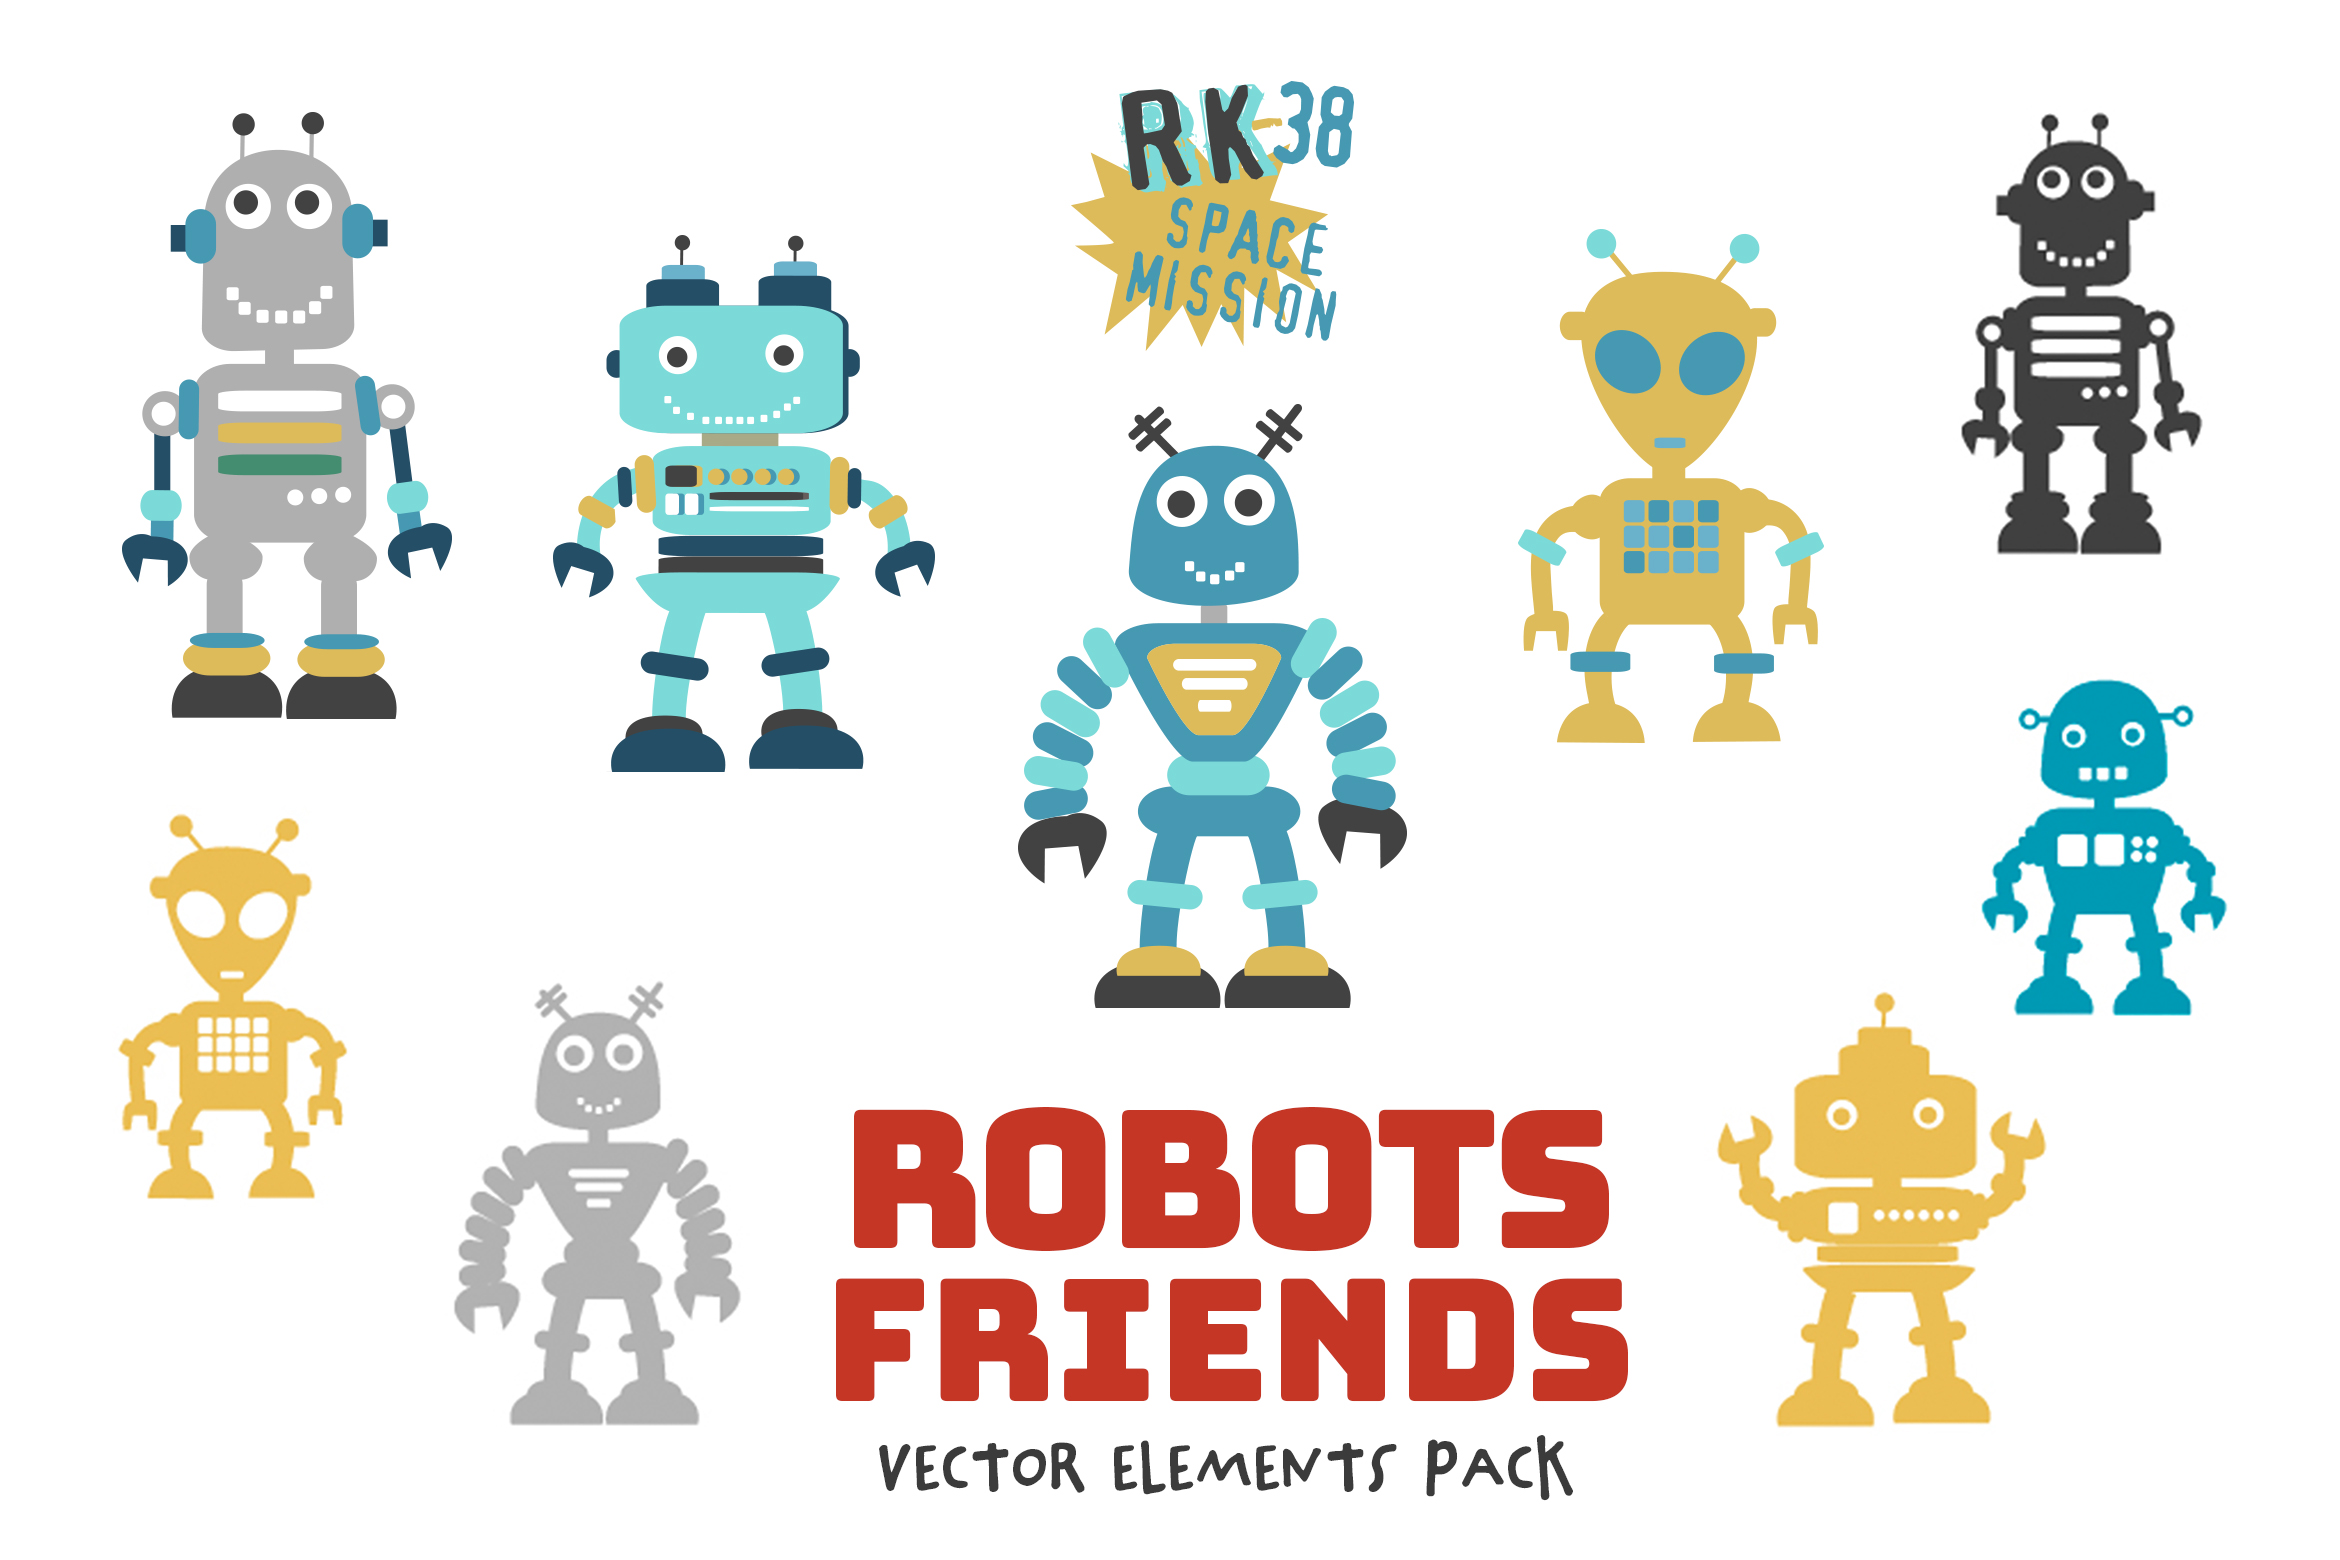 Robots_Friends_Pack_1_2340.jpg